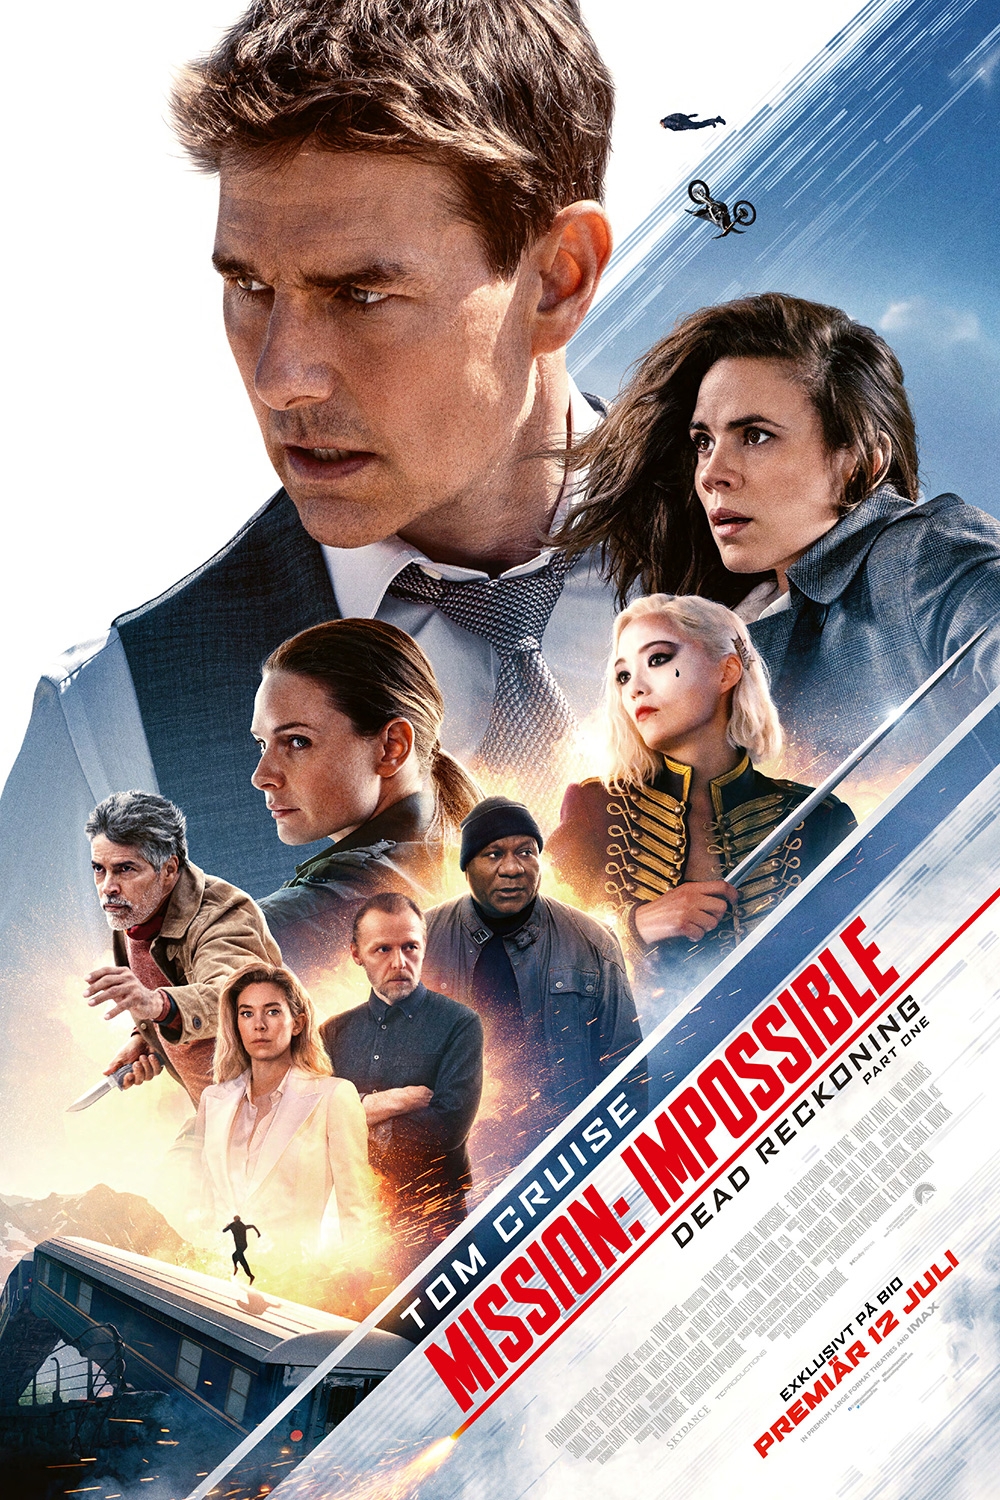 (Review) 'Nhiệm vụ bất khả thi: Nghiệp báo' - Đẳng cấp 5 sao, Tom Cruise xứng danh 'ông vua Hollywood'